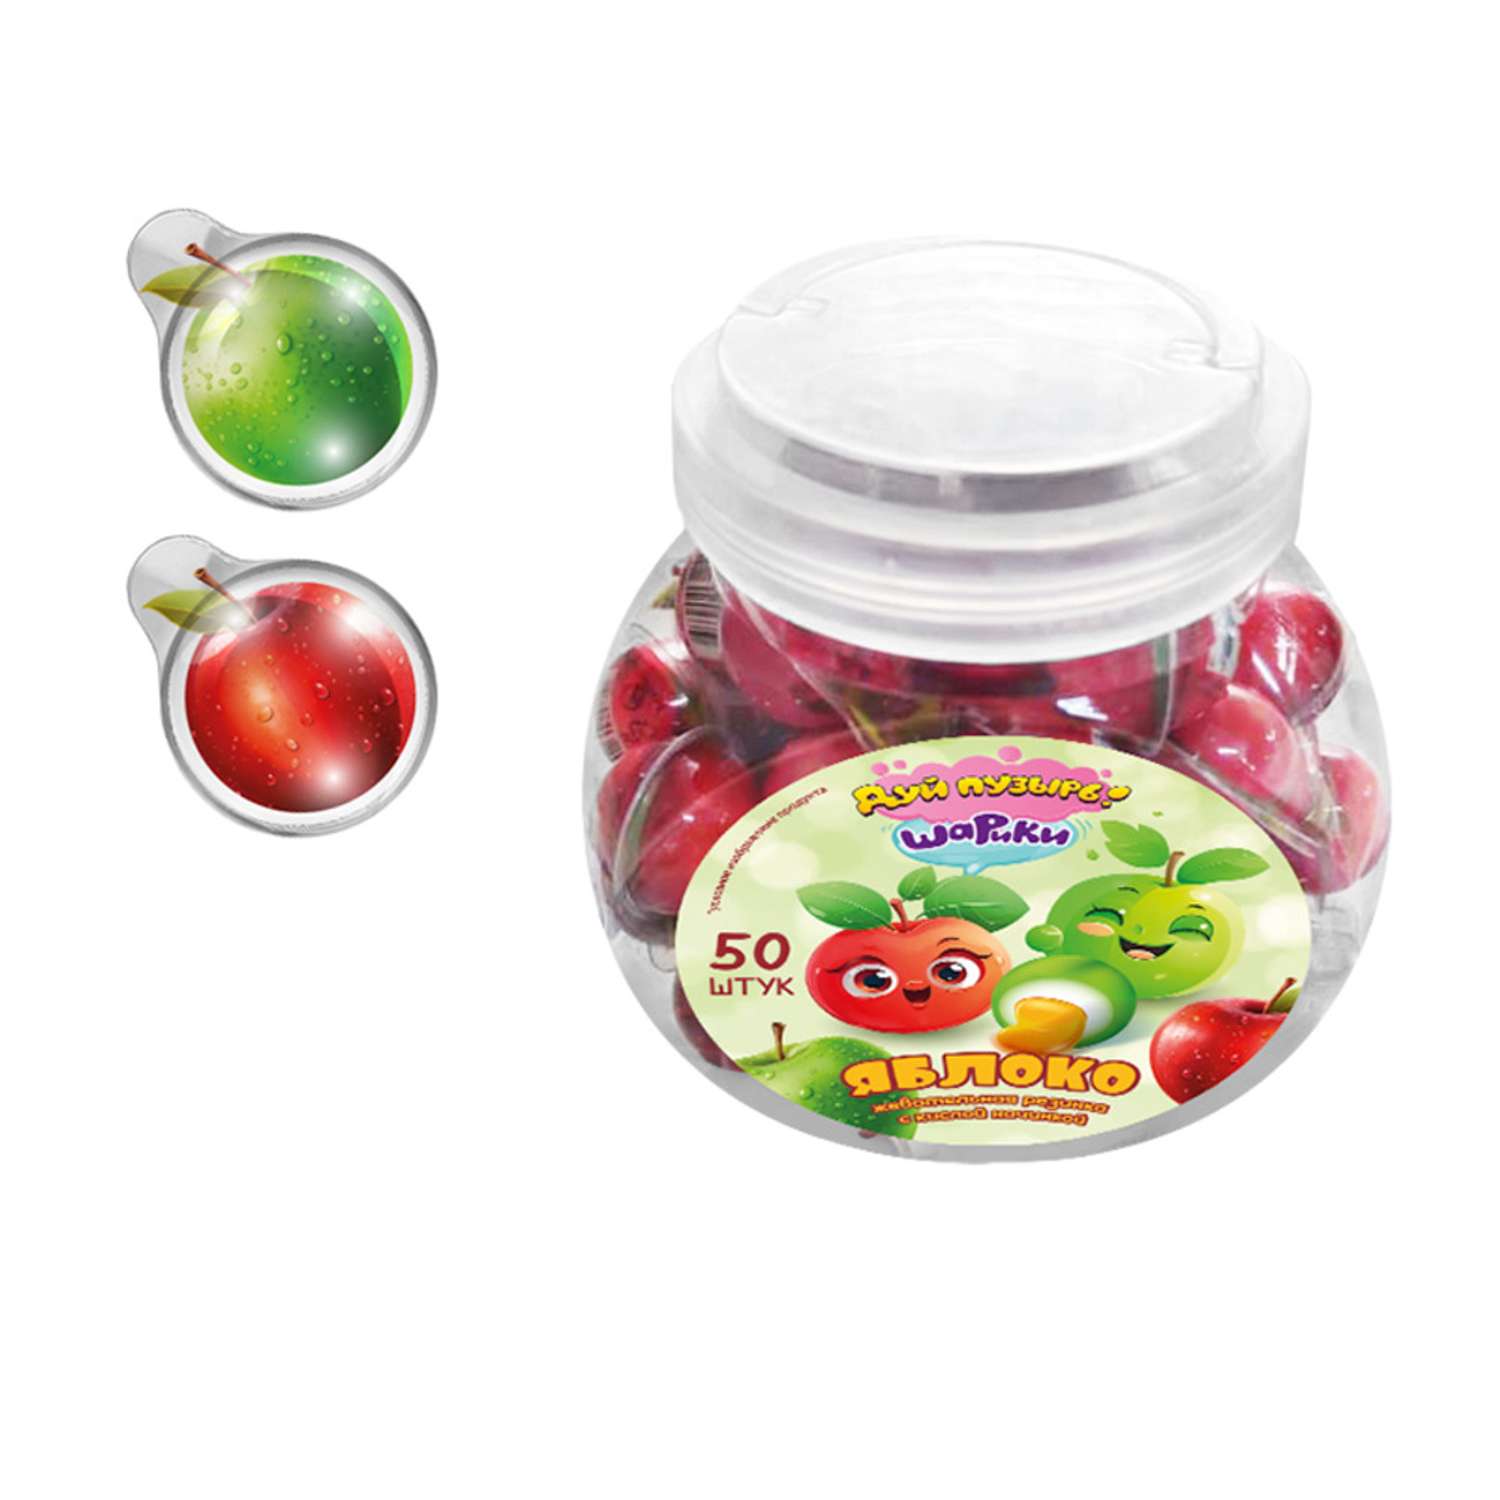 Жевательная резинка Fun Candy Lab Дуй пузырь шарики яблоко 50 шт по 10 гр - фото 1